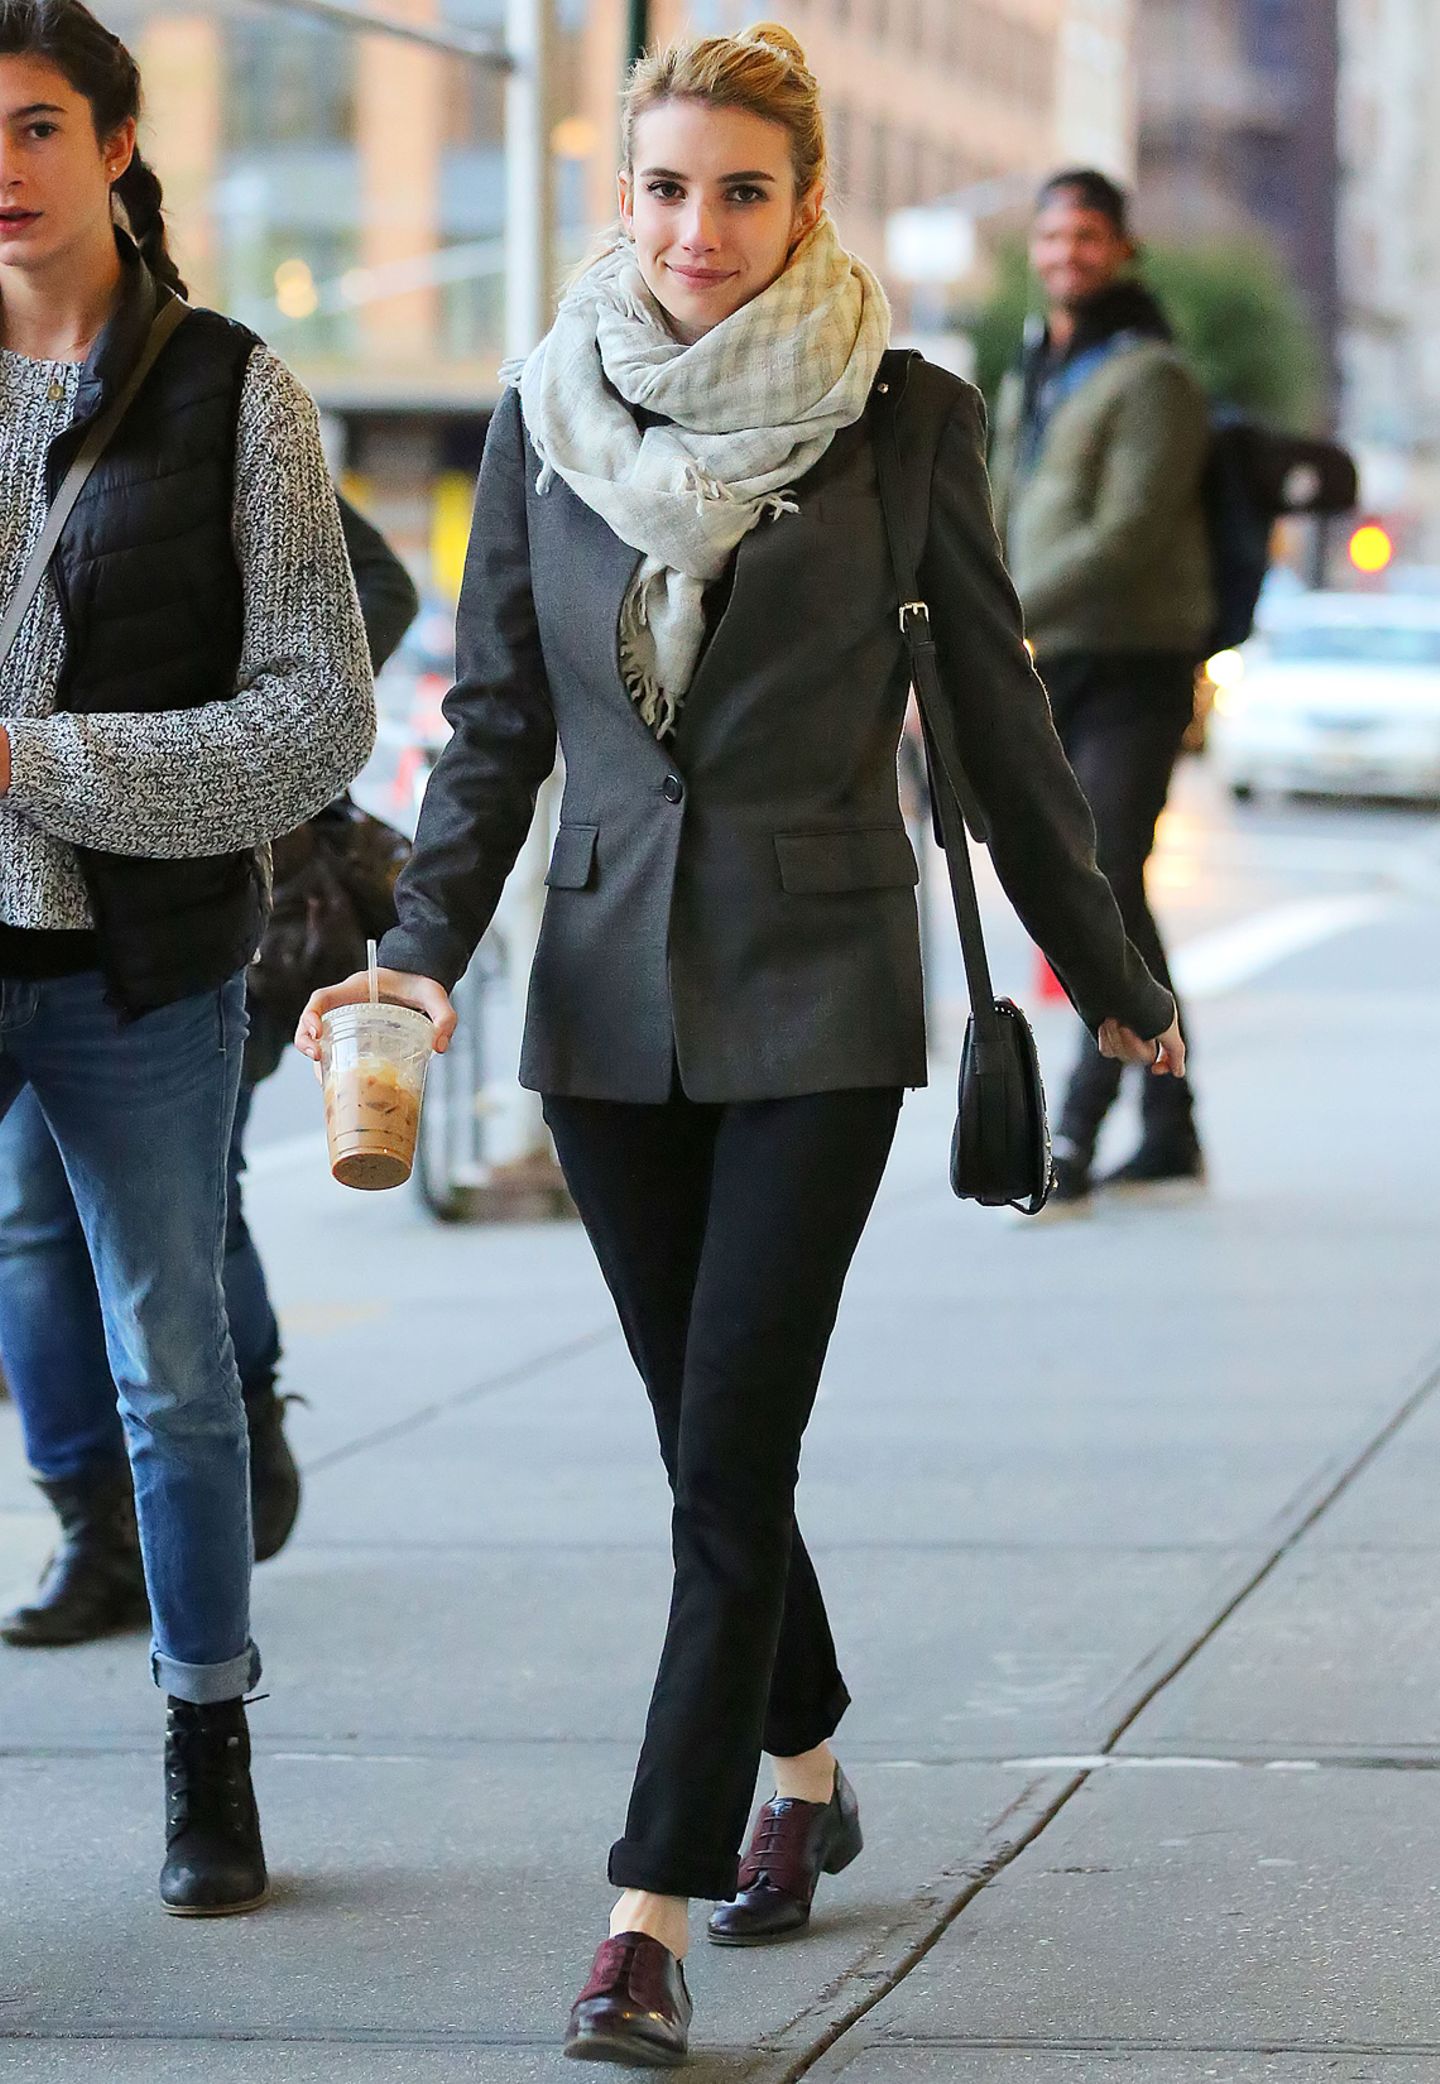 Einen coolen Tom-Boy-Style erzielt Emma Roberts, indem sie zum kastigen Sakko schicke Schnürschuhe trägt und den Saum ihrer Hosebeine leicht hochkrempelt. Mit einem XL-Schal schützt sie sich vor der Kälte.